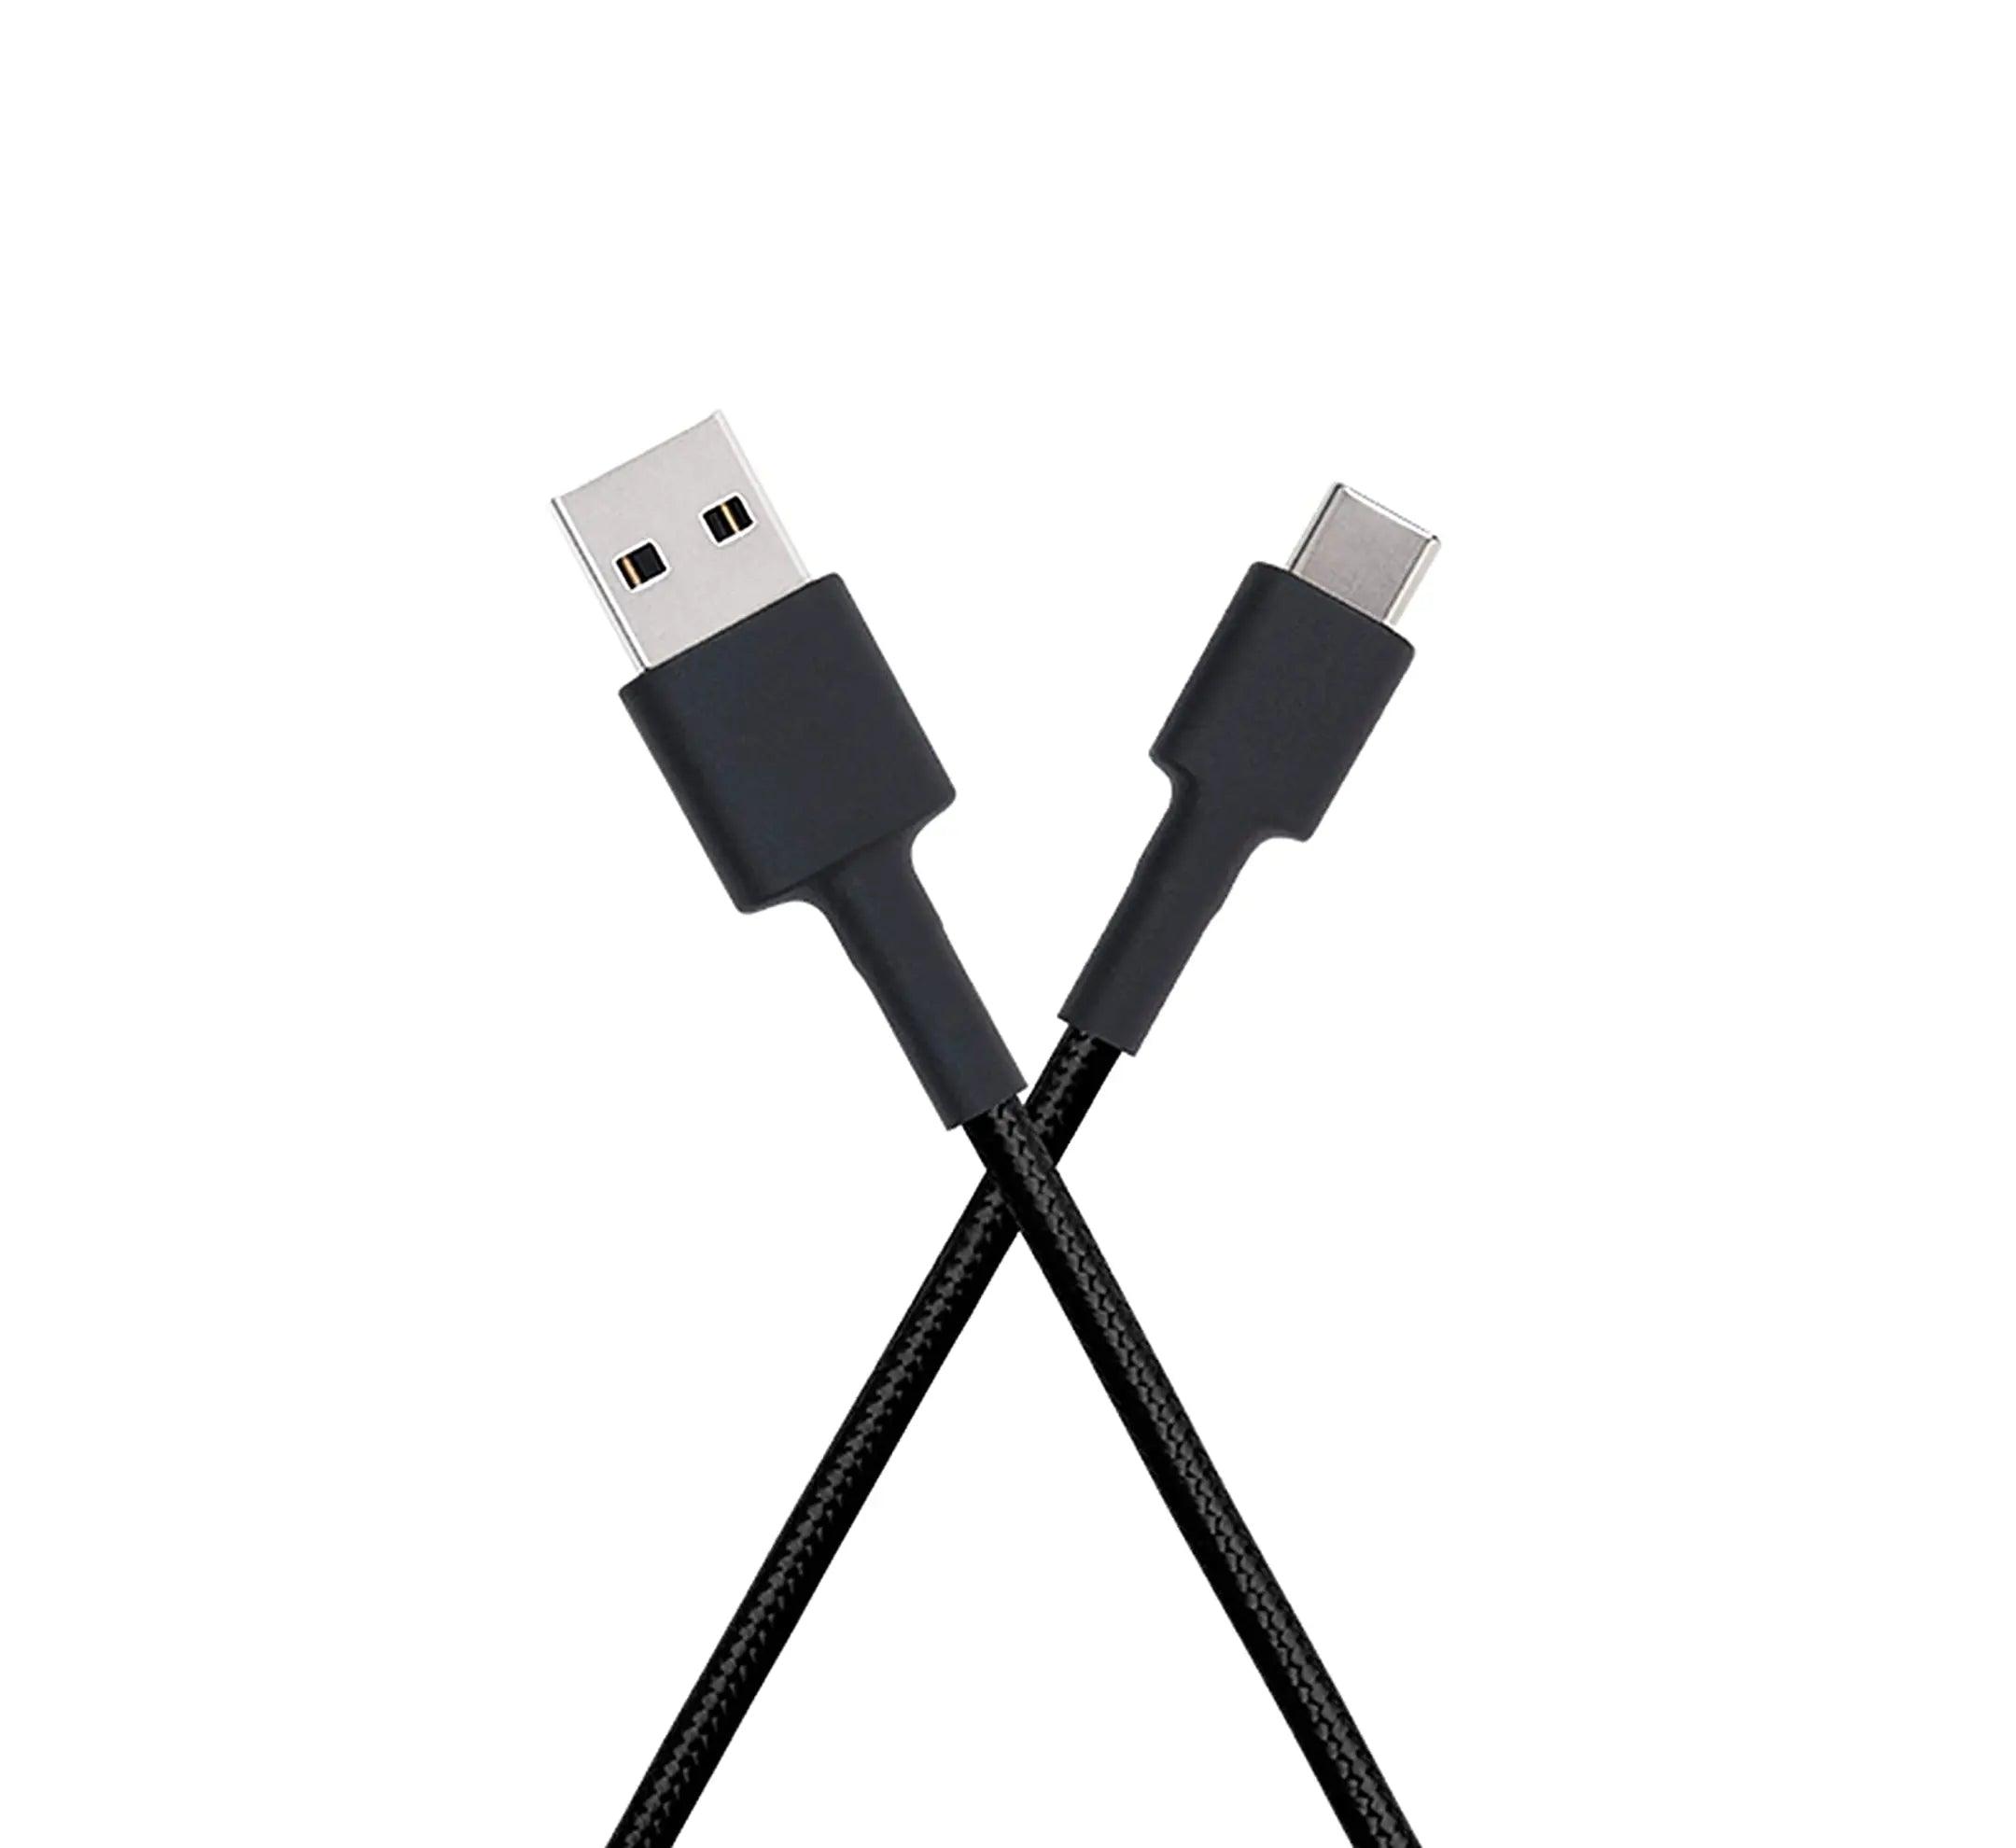 Mi Braided USB Type-C Cable 100cm (Black) - Brightex Retail UK